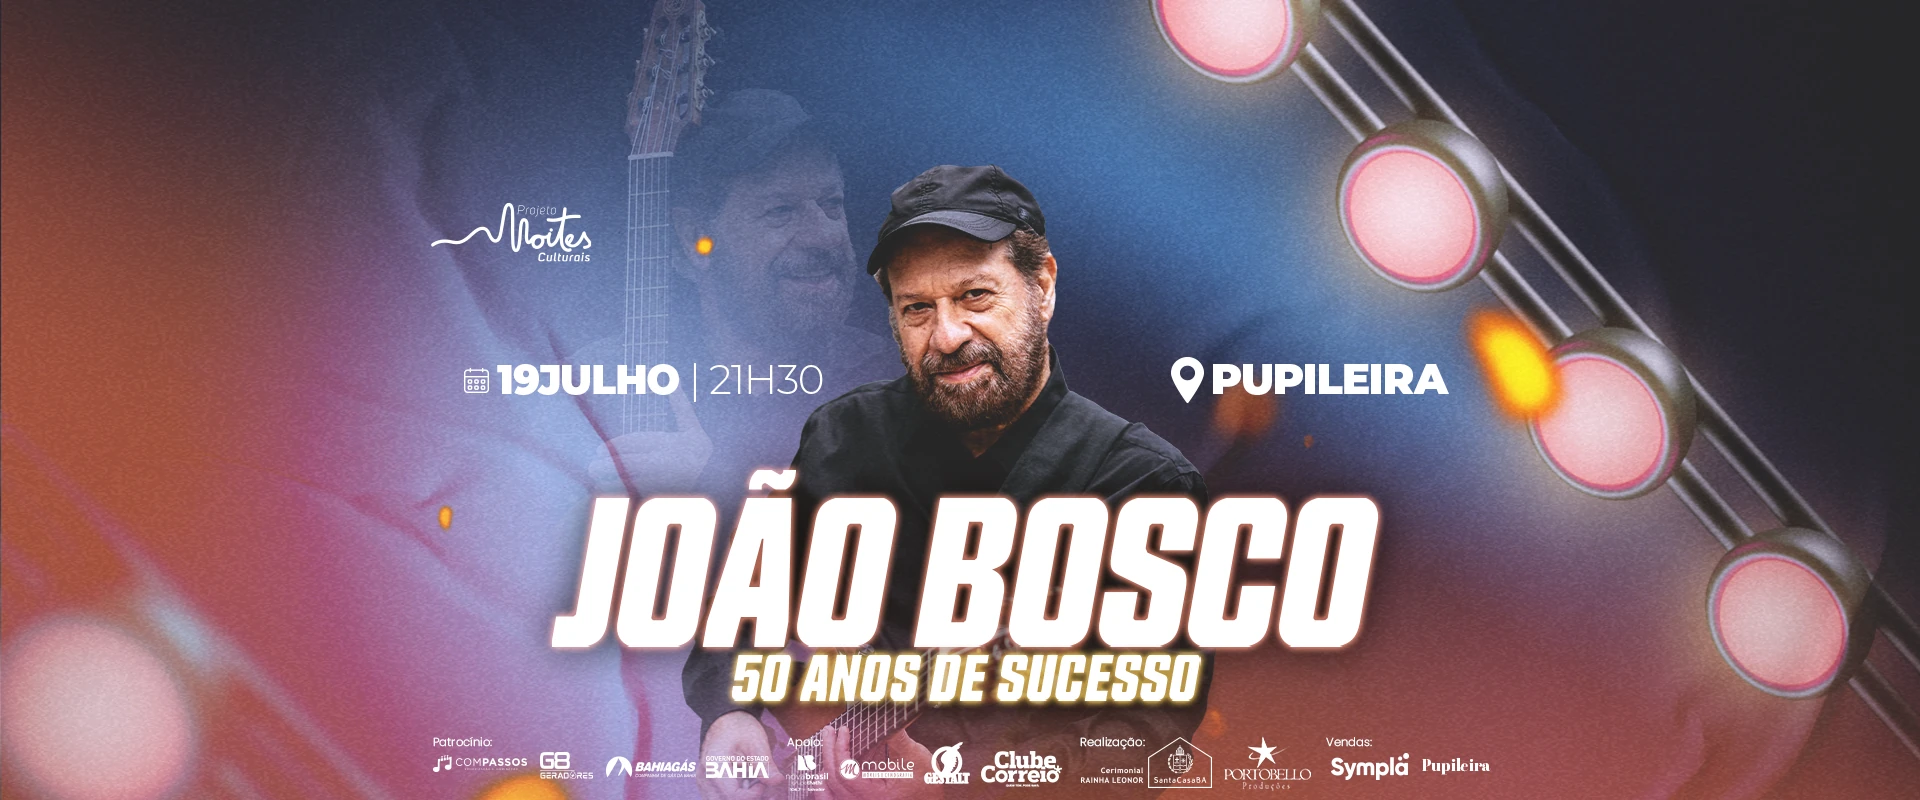 Show João Bosco 